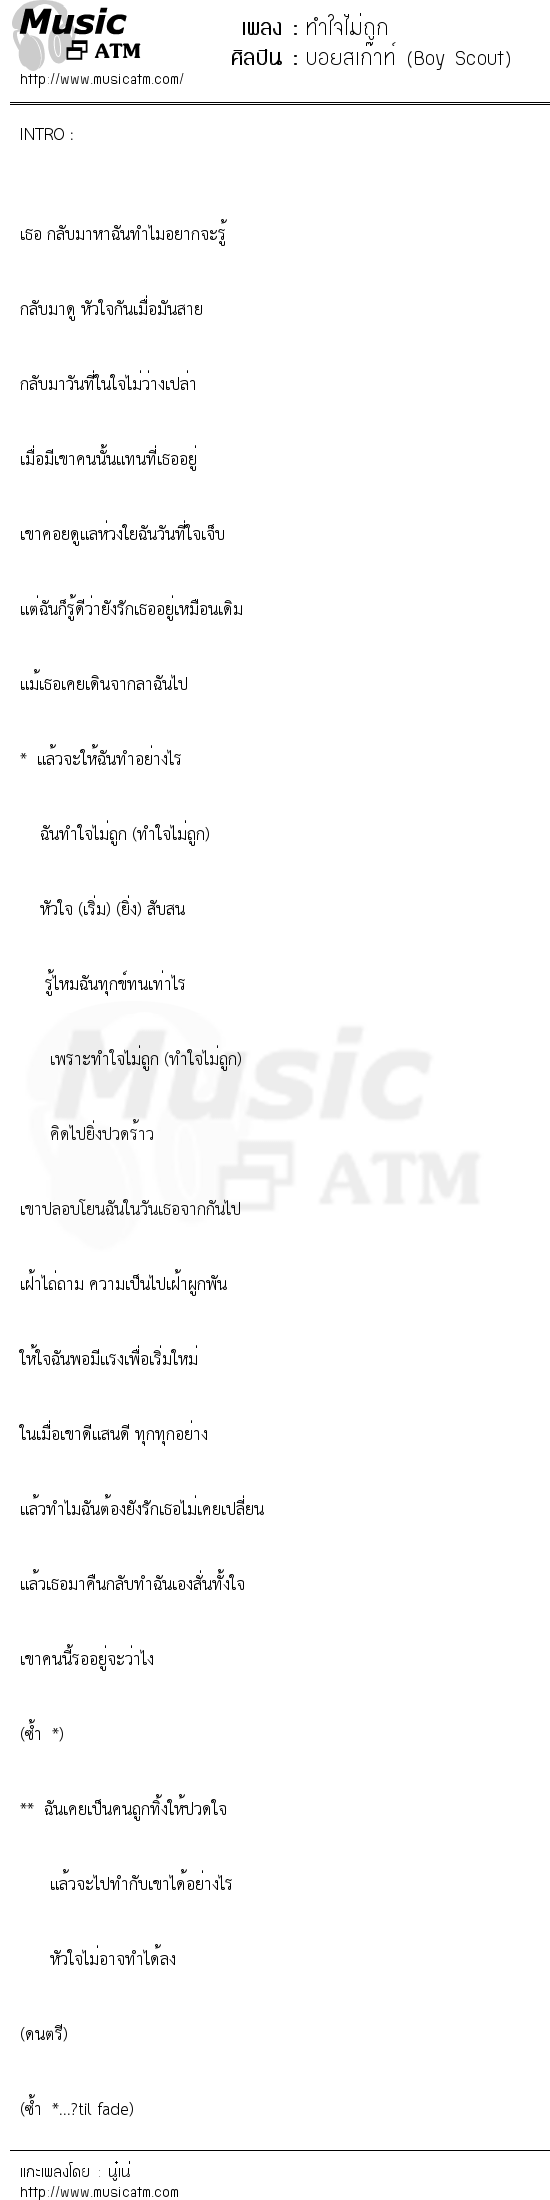 เนื้อเพลง ทำใจไม่ถูก - บอยสเก๊าท์ (Boy Scout) | เพลงไทย